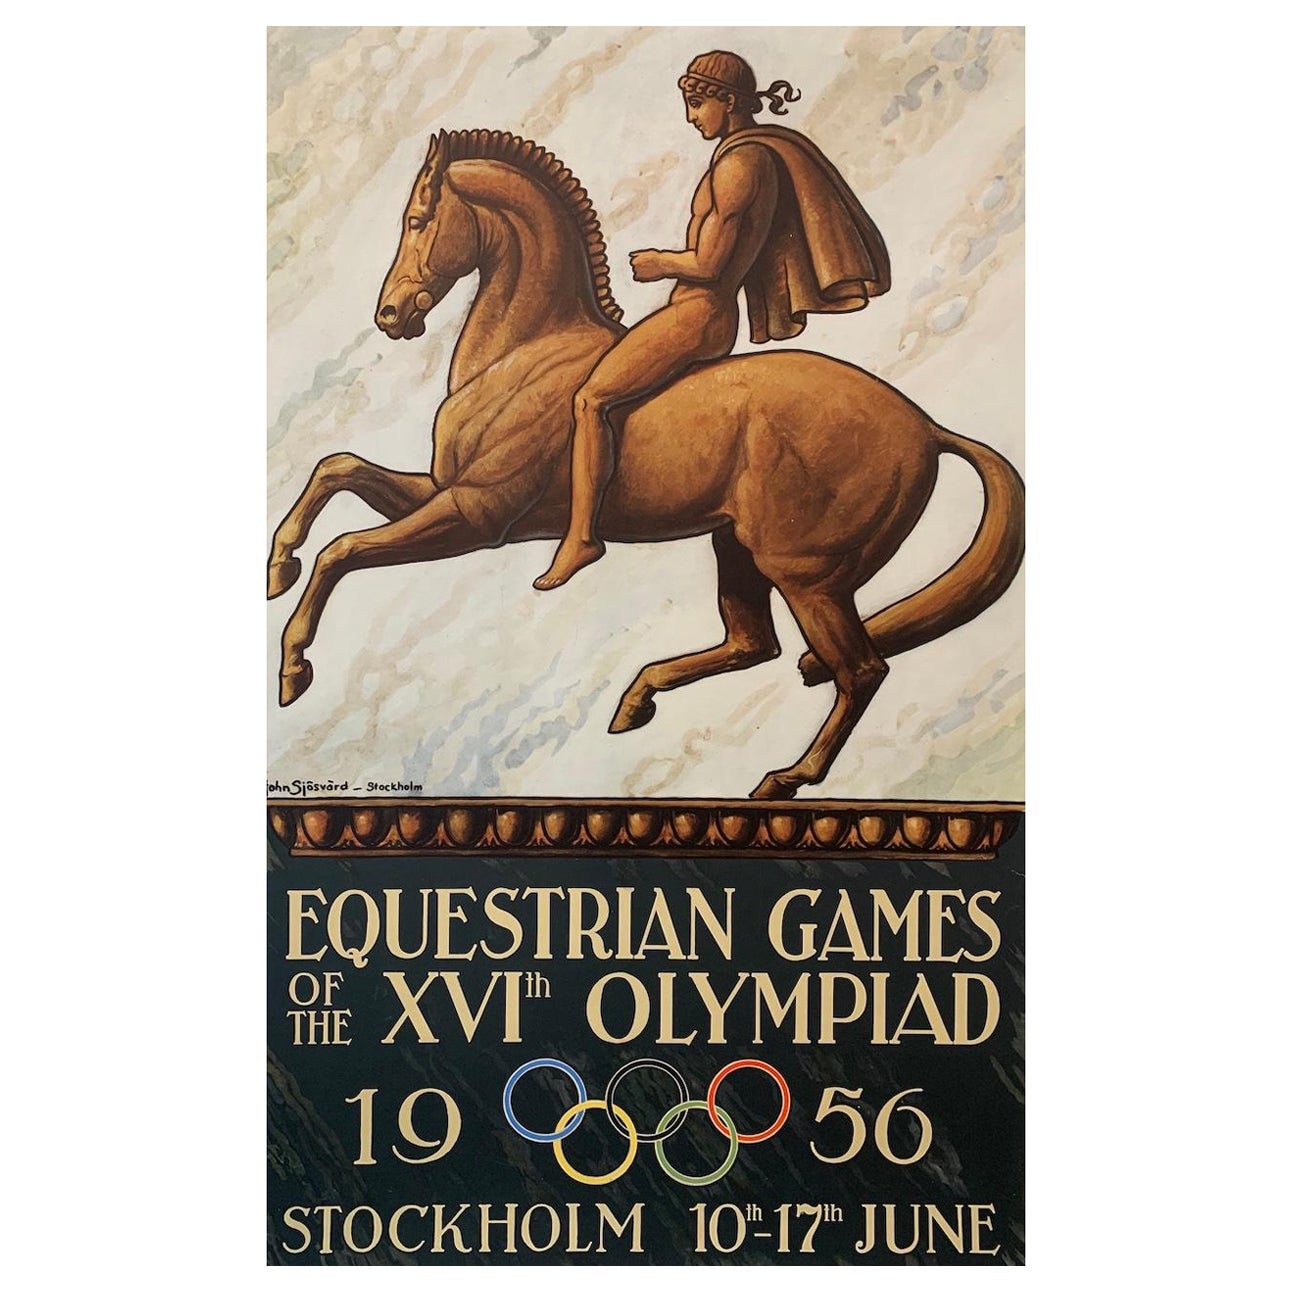 EQUESTRIAN GAMES, Stockholm 1956 Olympics, Original Vintage Poster For Sale